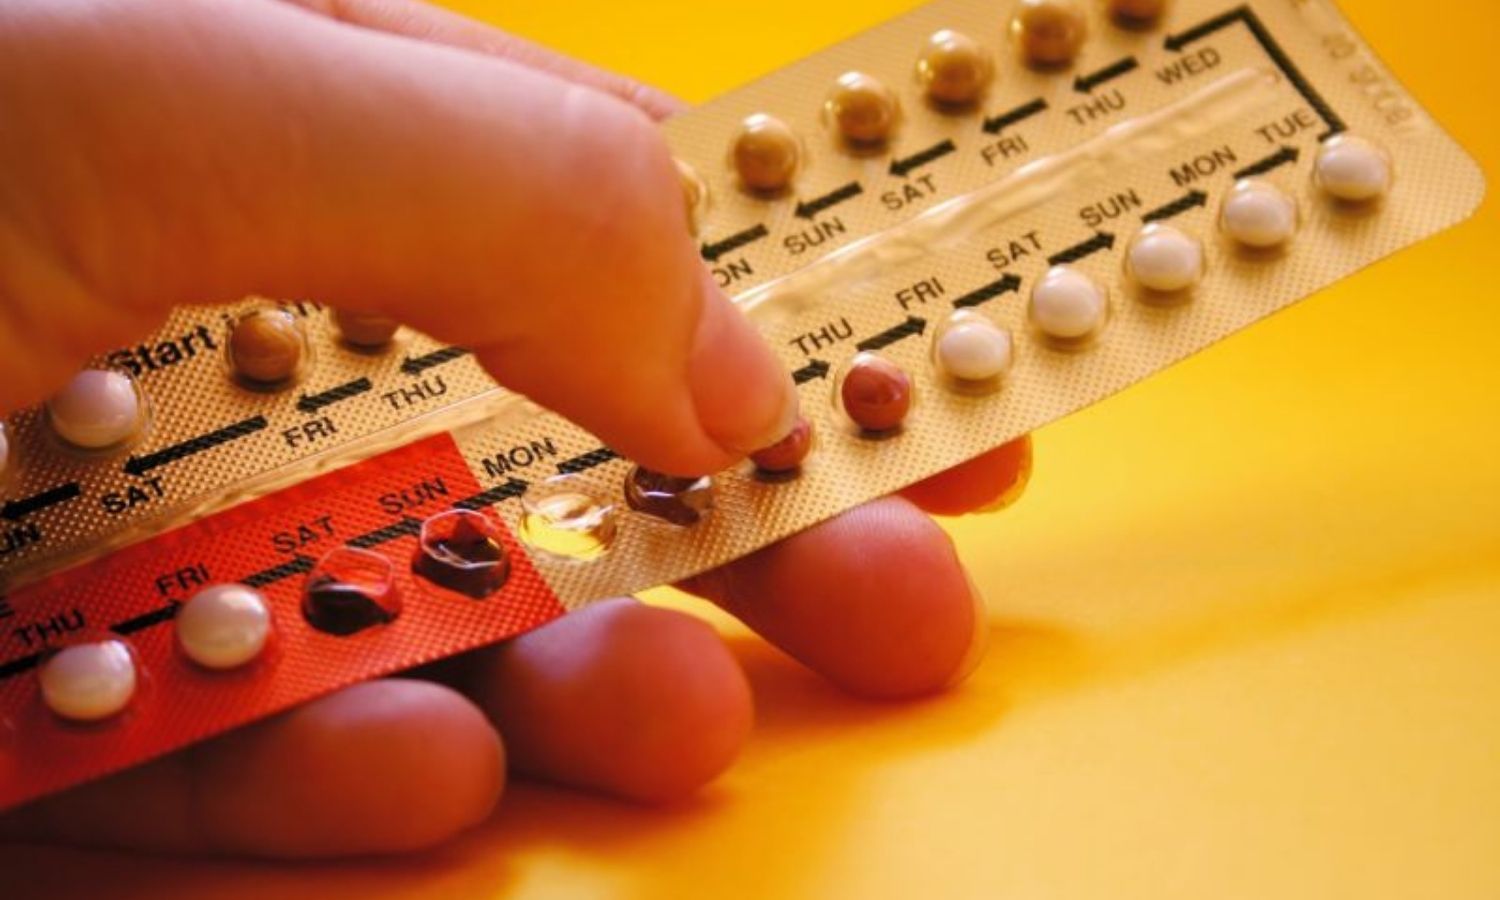 حبوب منع الحمل، من الوسائل الشائعة التي يستخدمها النساء (كوينزلاند هيلث) - 9 تشرين الأول 2019